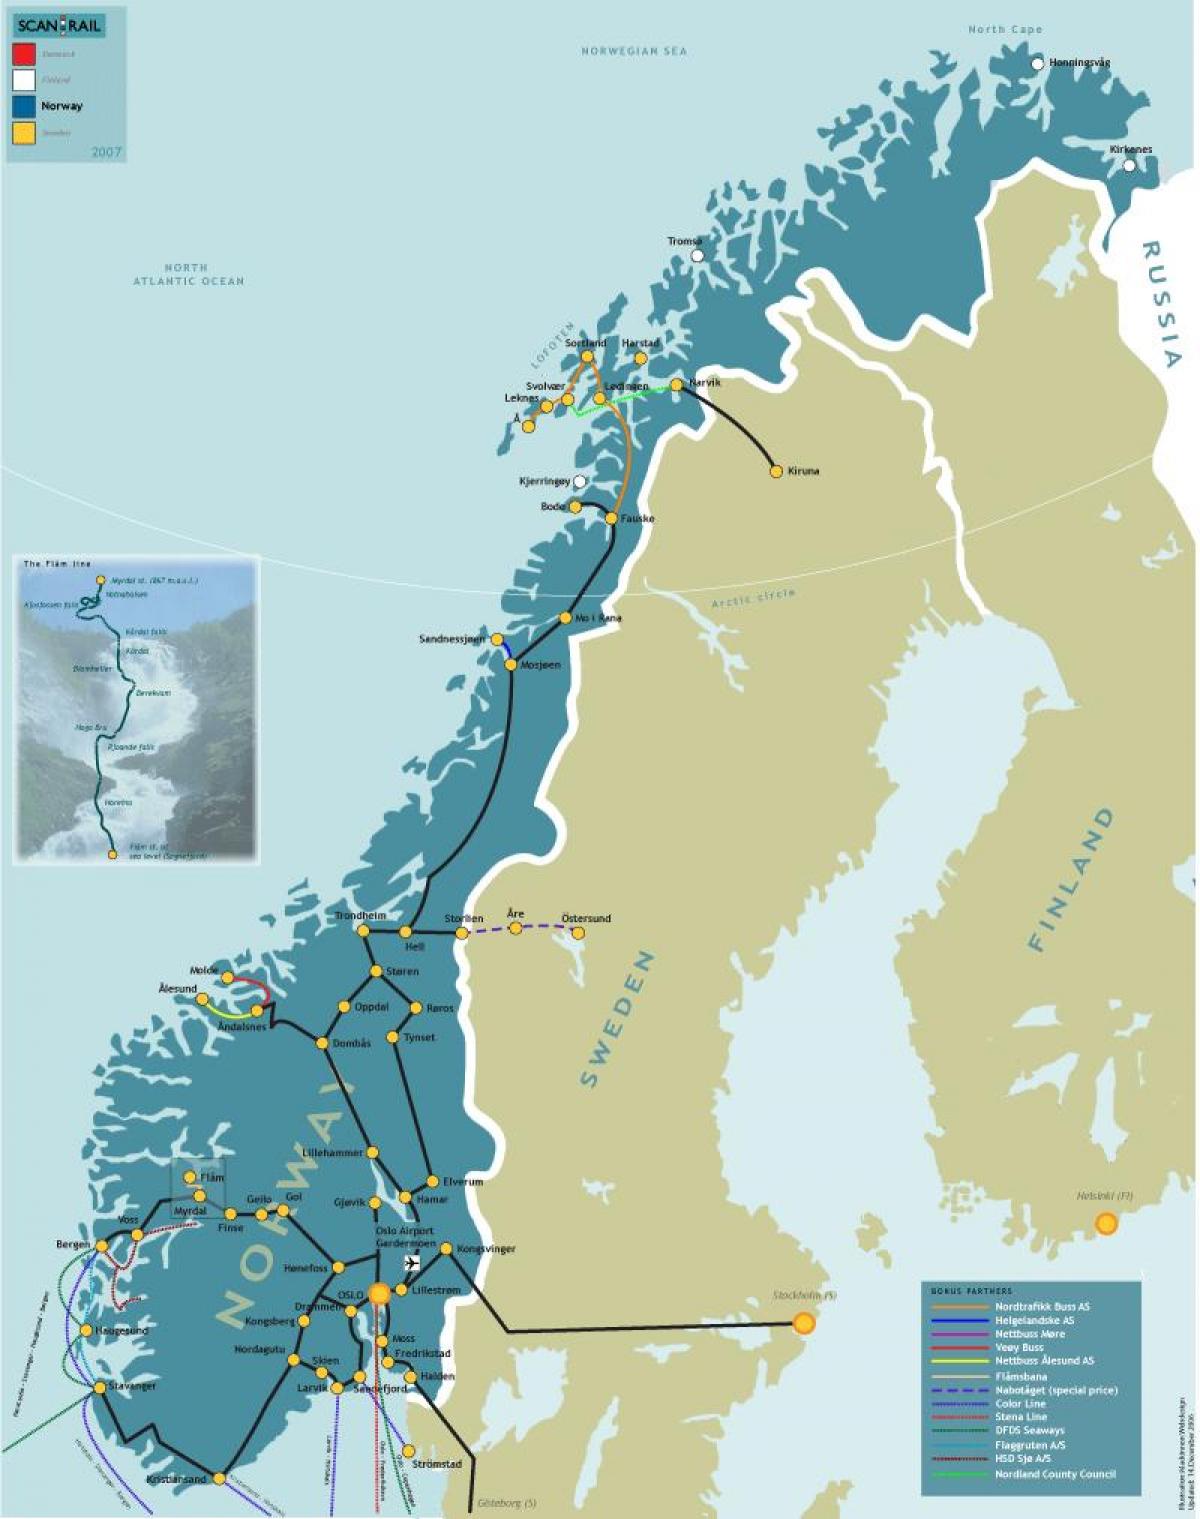 Norja juna kartta - Norjan rail kartta (Pohjois-Eurooppa - Eurooppa)